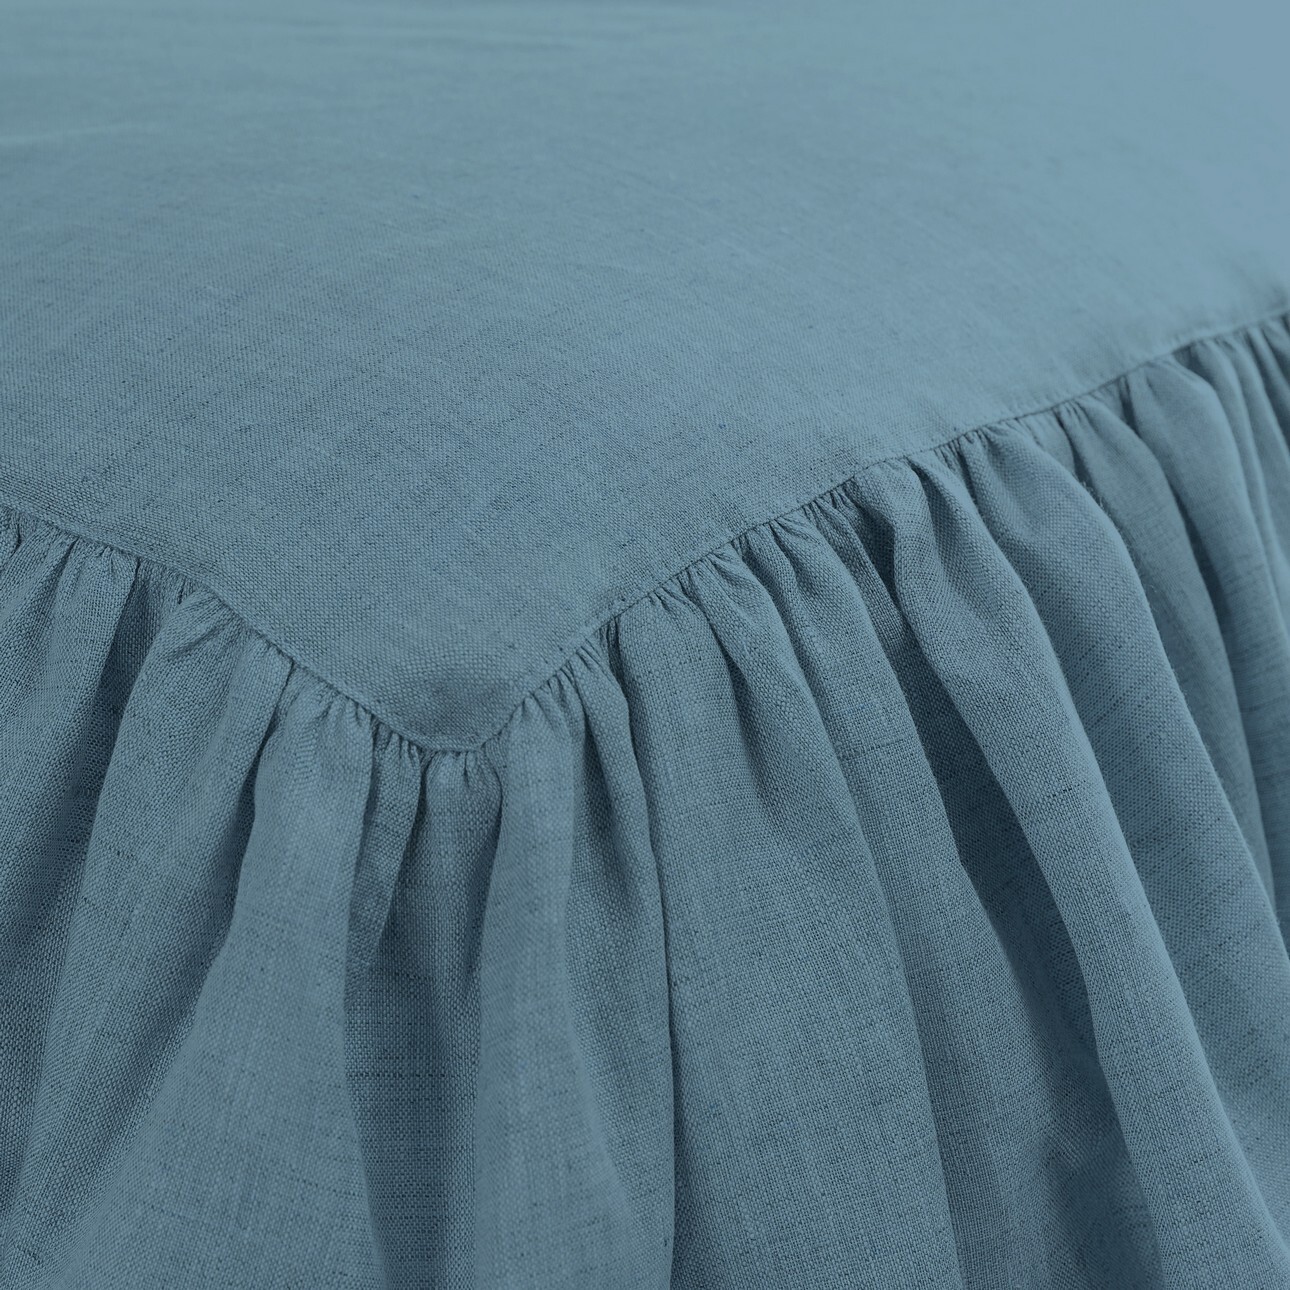 Tagesdecke mit Rüsche Linen Frilly 160x210cm grey-blue, 160 x 210 cm günstig online kaufen